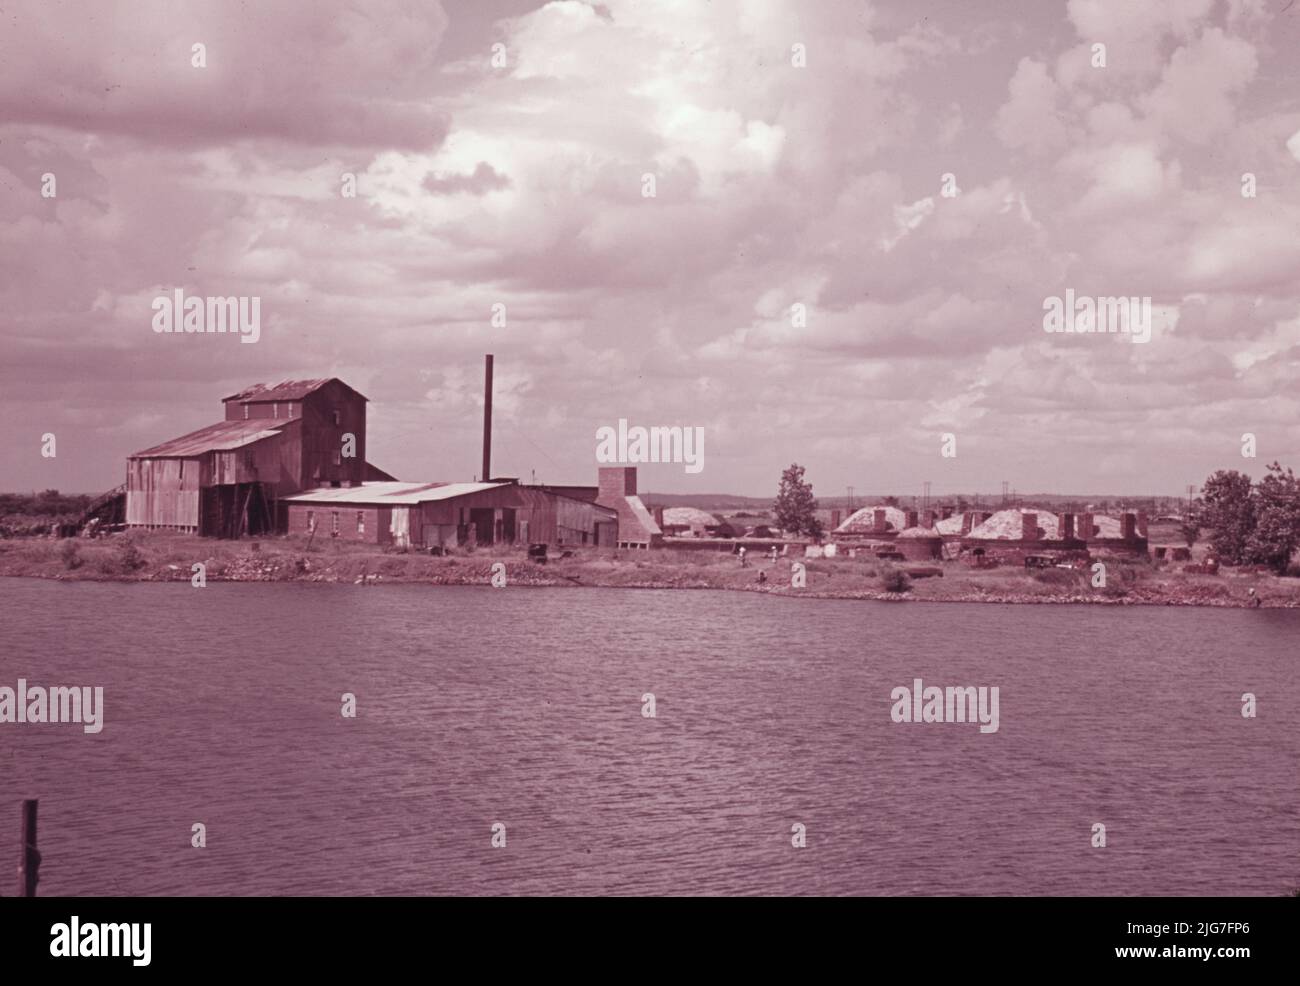 Verlassene Ziegelfabrik in der Nähe von Muskogee, Oklahoma. Stockfoto